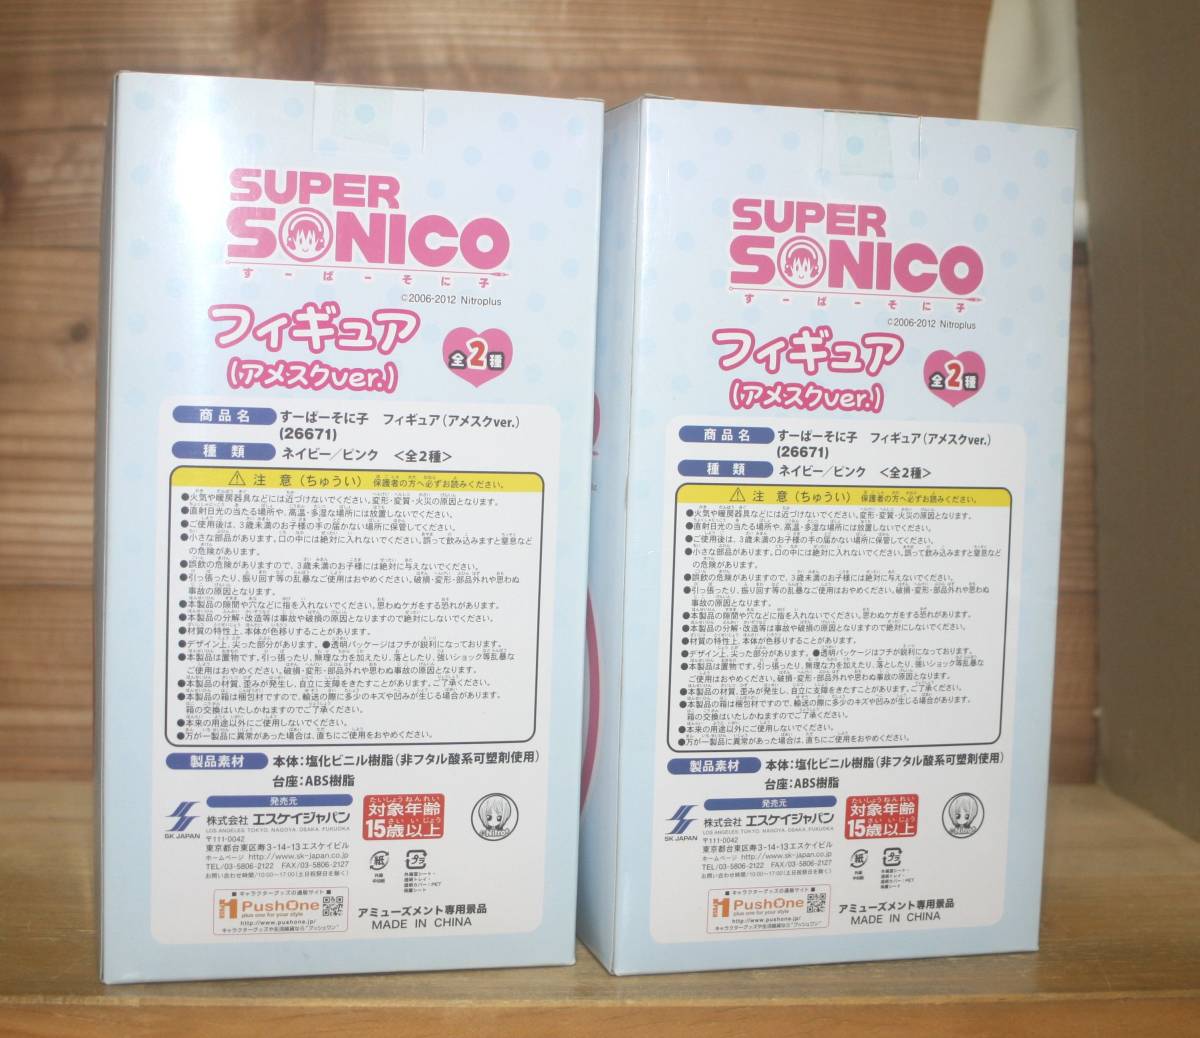  новый товар * Super Sonico a женский kver. чёрный + розовый итого 2 пункт ( SK Japan,ni Toro плюс,.-.-...., Sony komi)